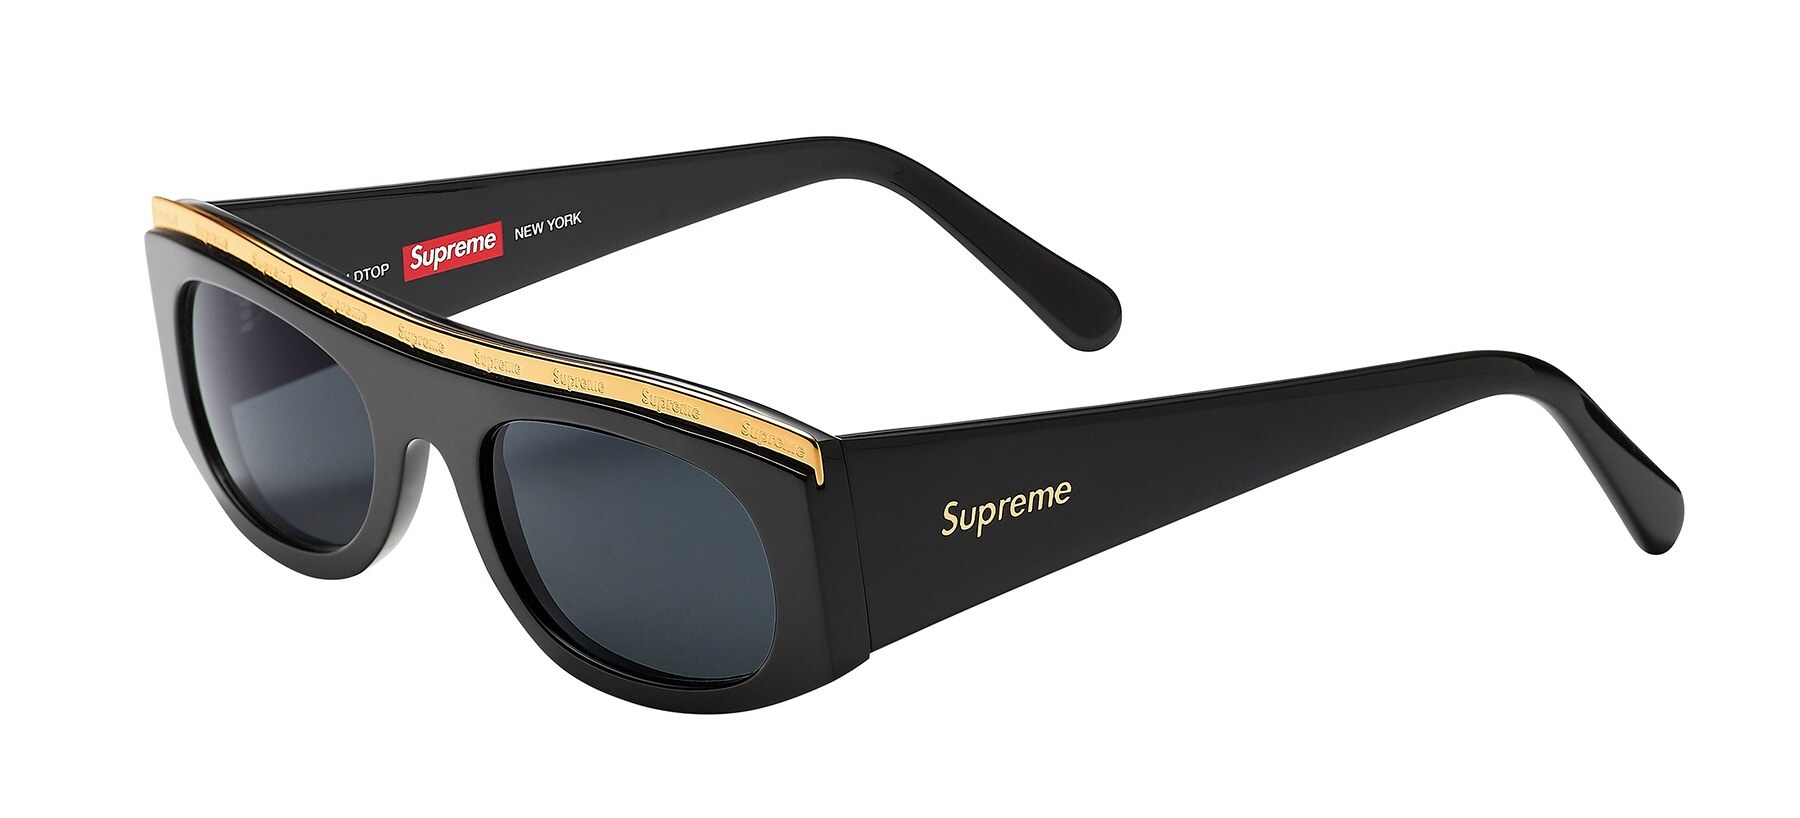 Supreme eyewear Spring/Summer 2021